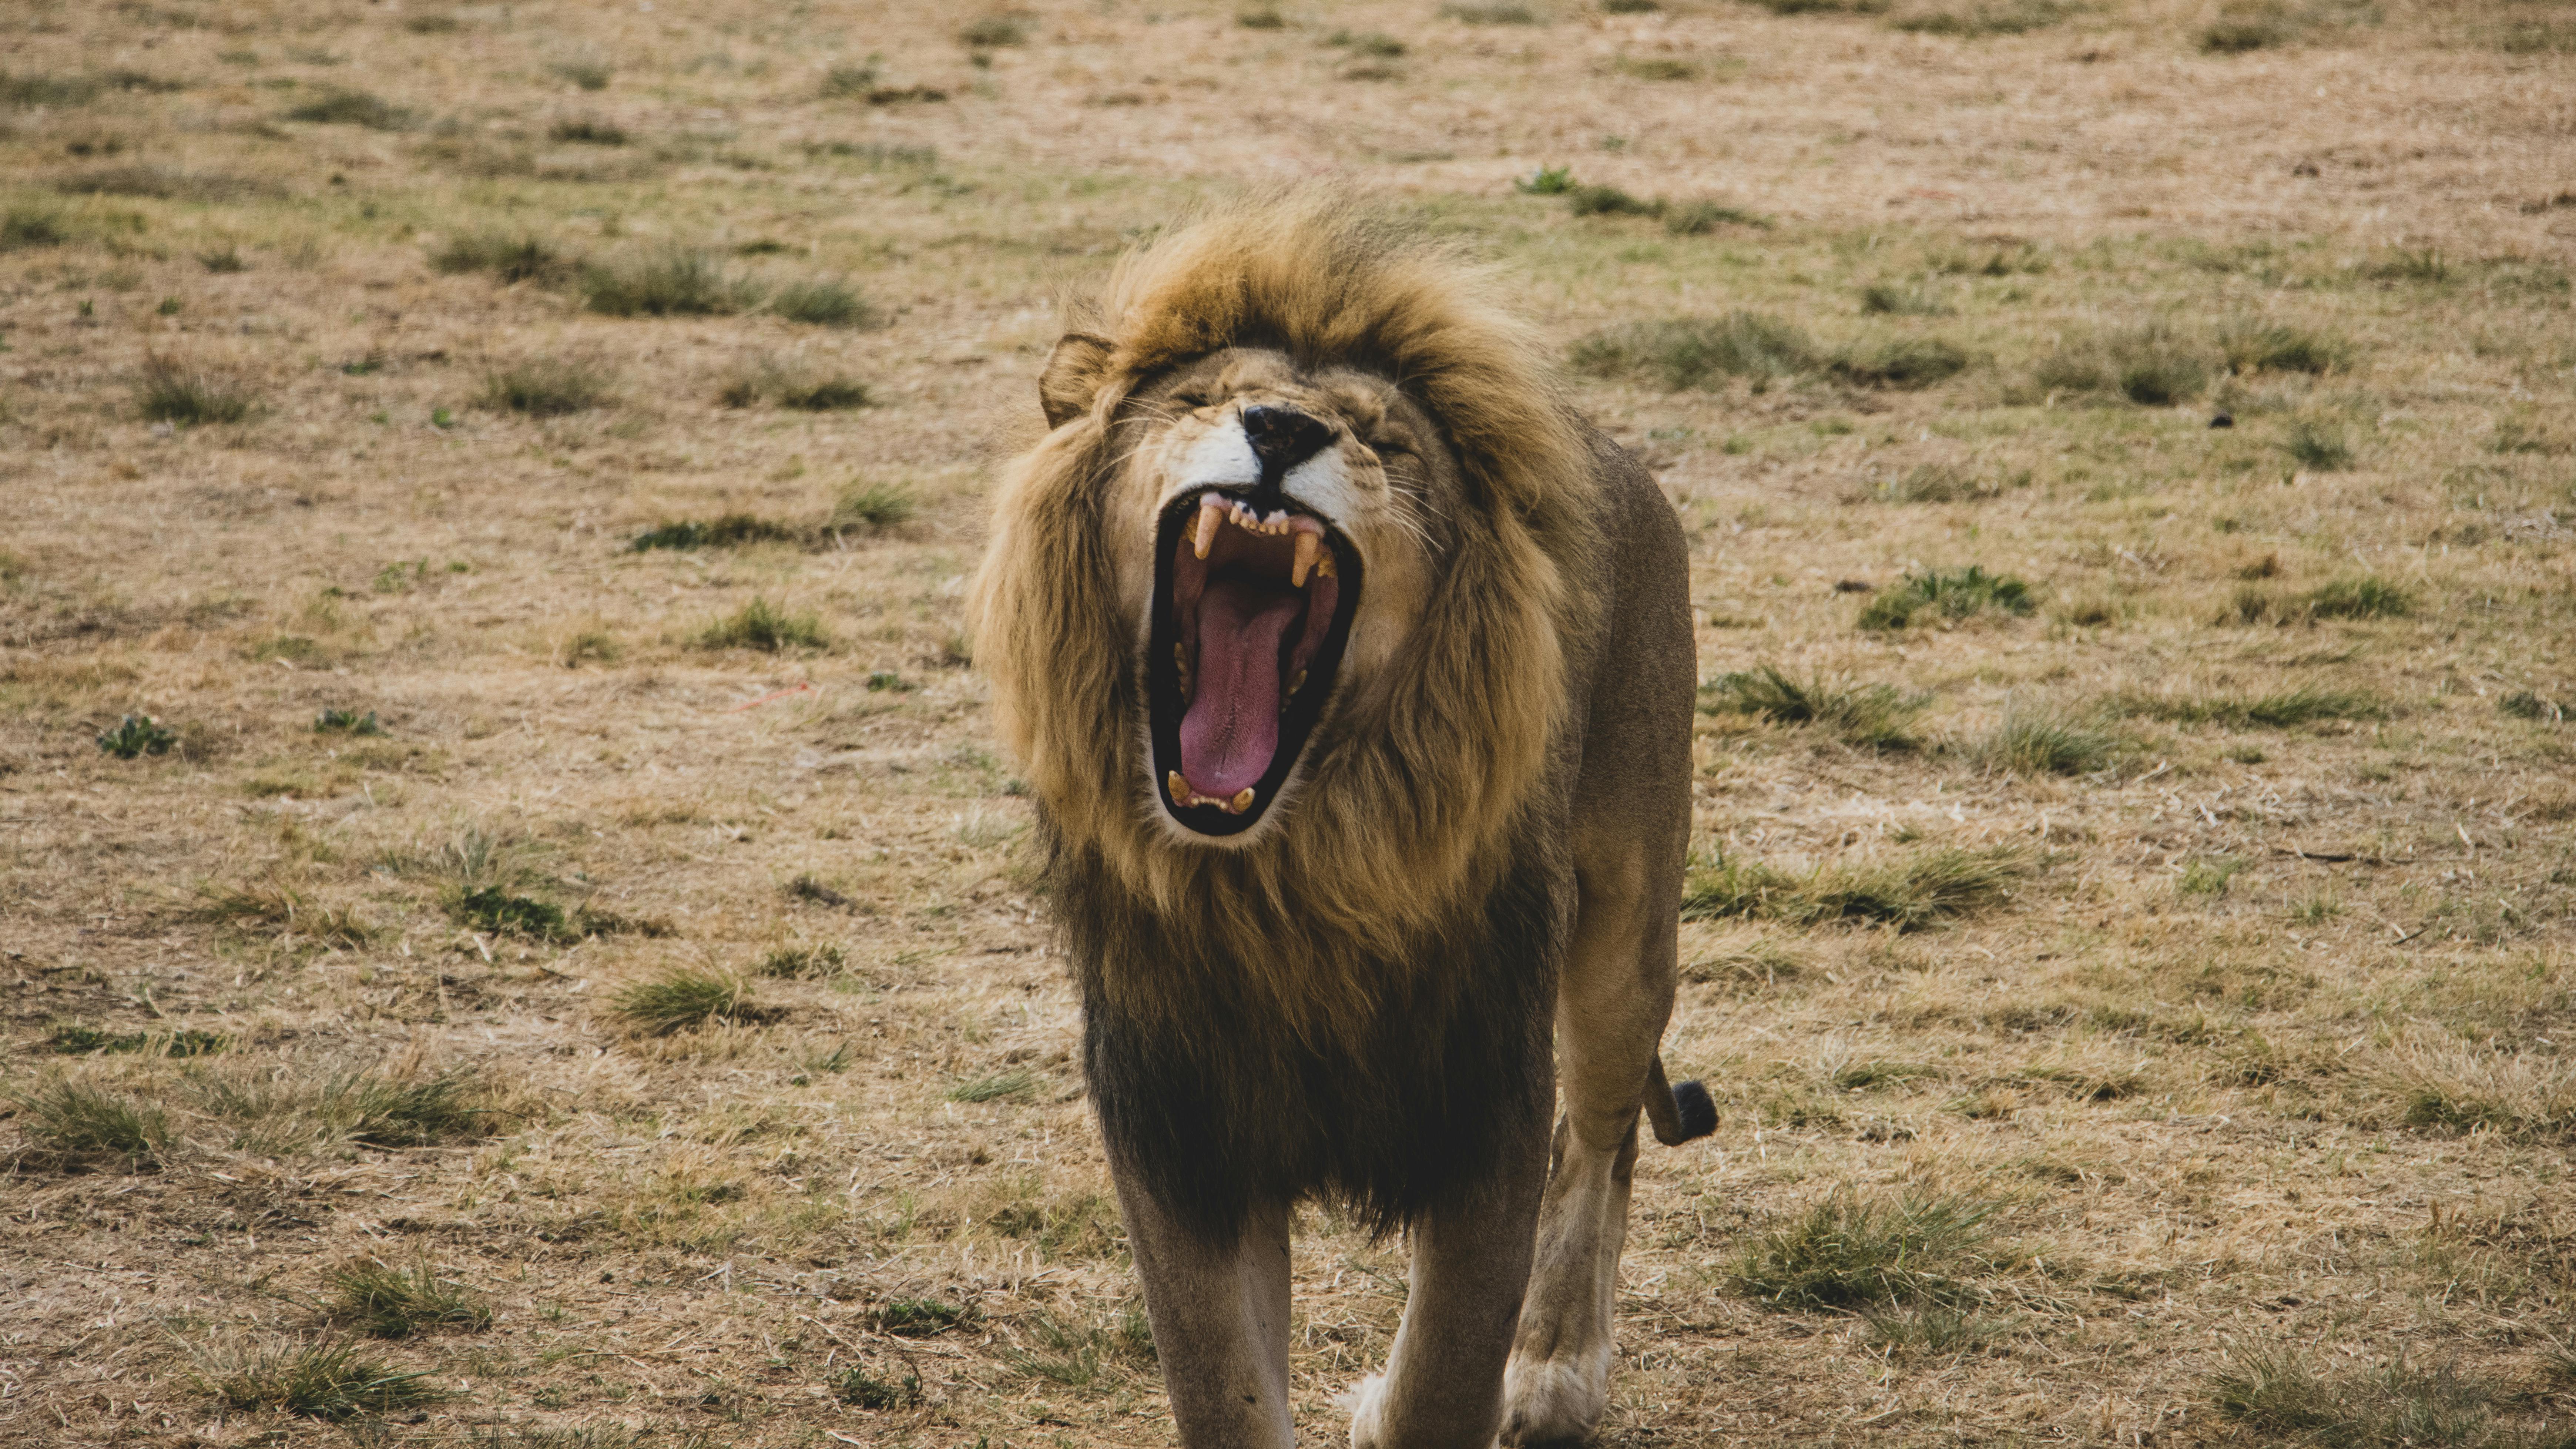 Lion Roars - Fractal Rendering HD, Stock Video